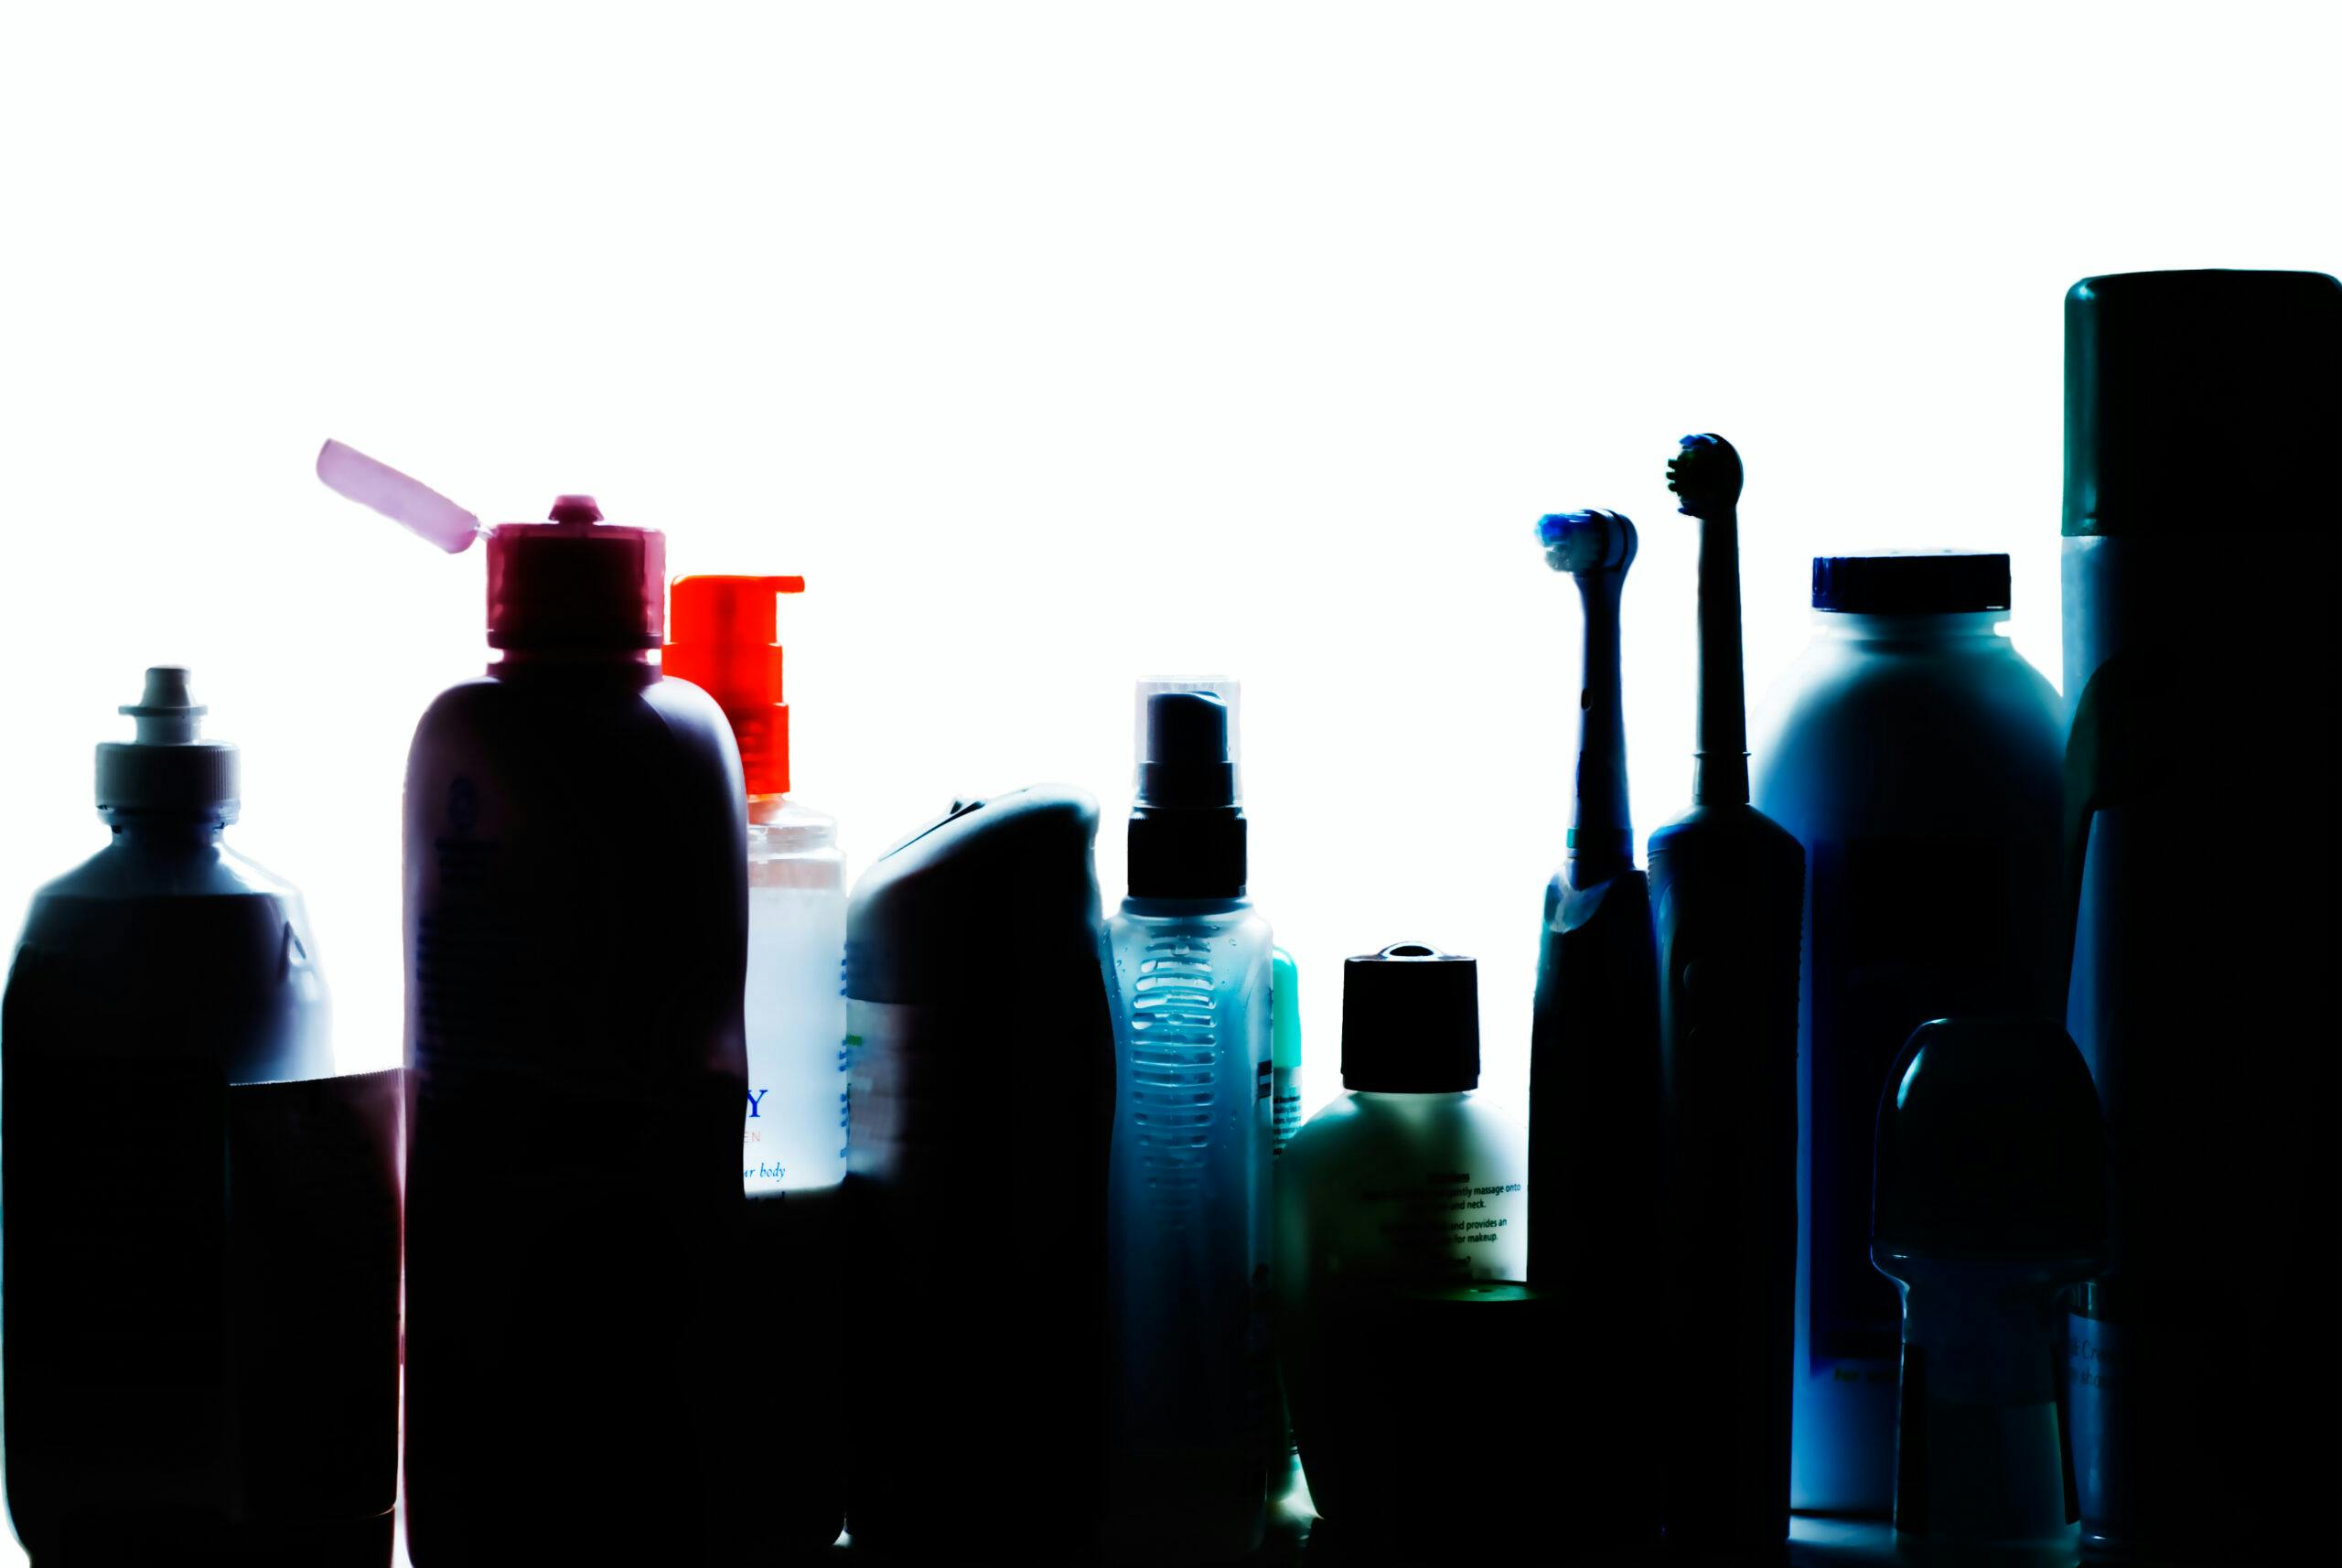 Siluett av hygienprodukter i ett badrumsskåp